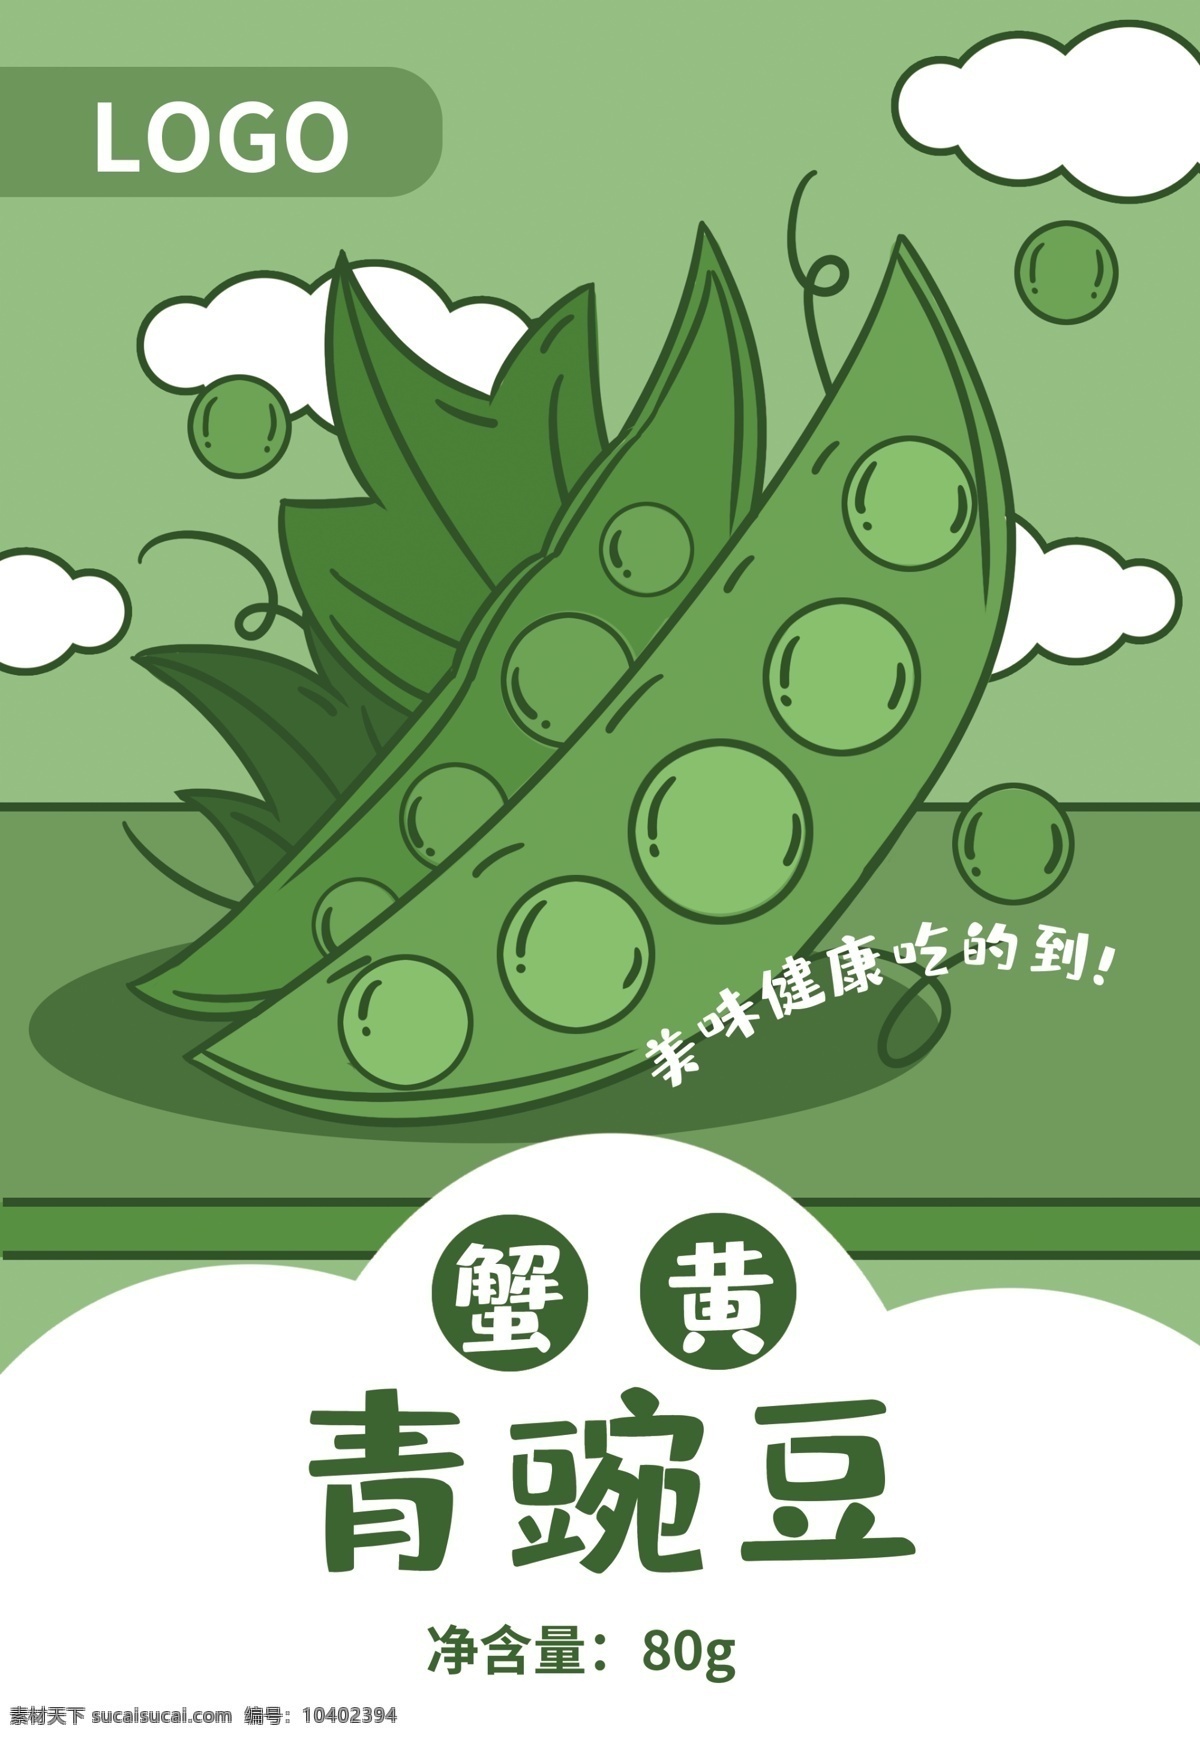 蟹黄 味 青 豌豆 云朵 插画 绘画 包装 蟹黄味 青豌豆 插画绘画 豆子 零食 健康食品 绿色食品 天然